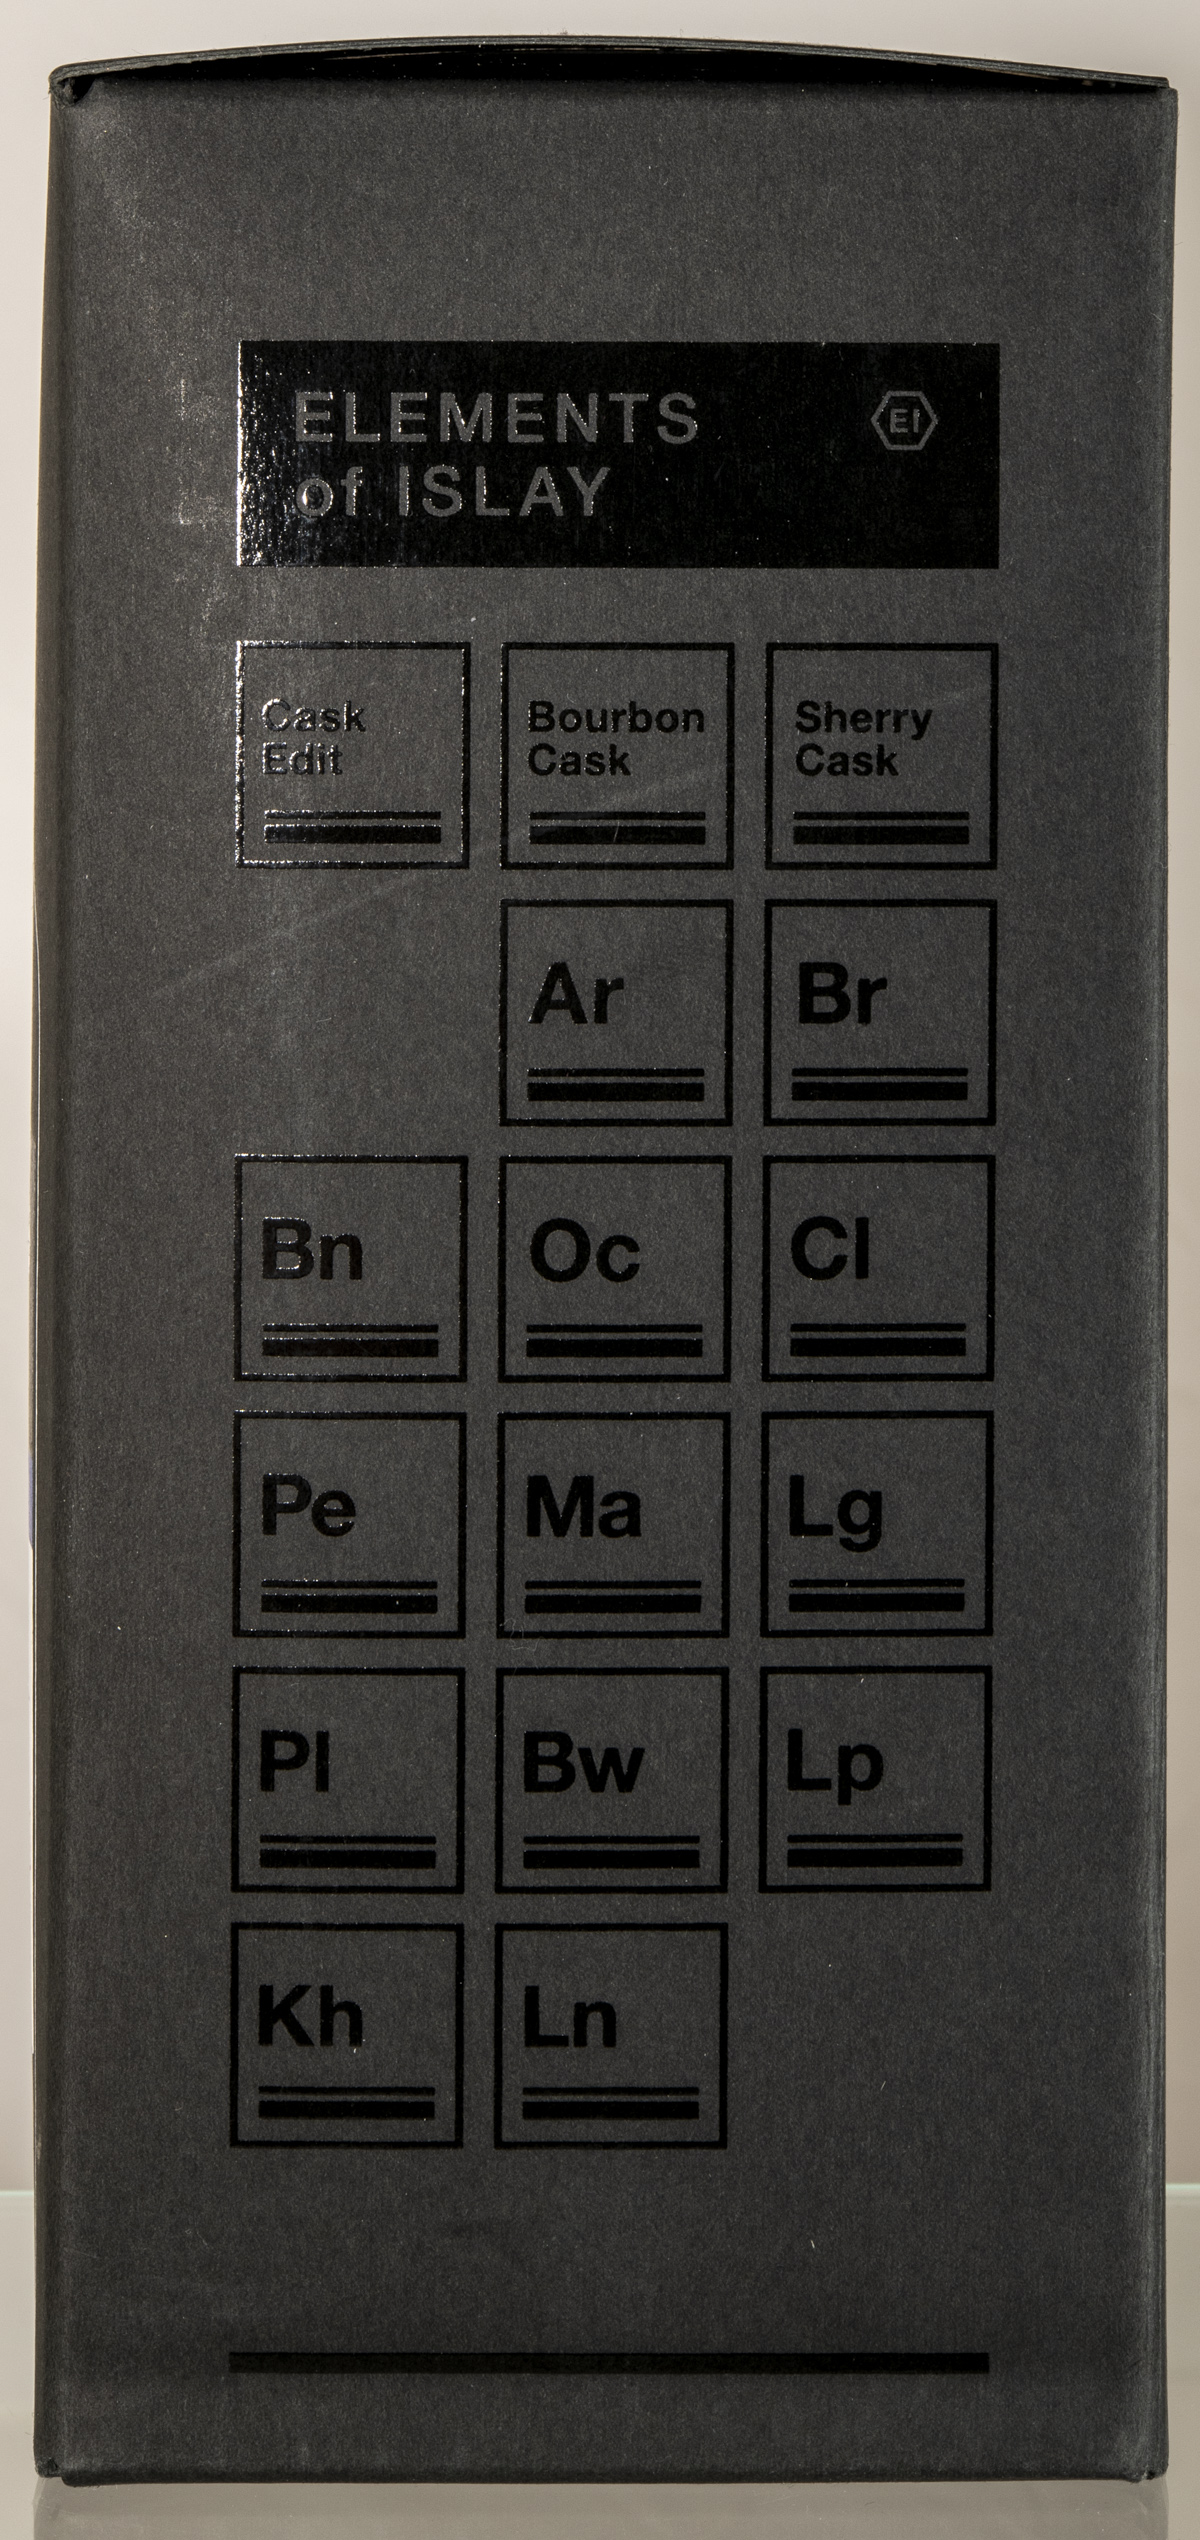 Billede: D85_8315 - Elements of Islay - Bourbon Cask - box side.jpg